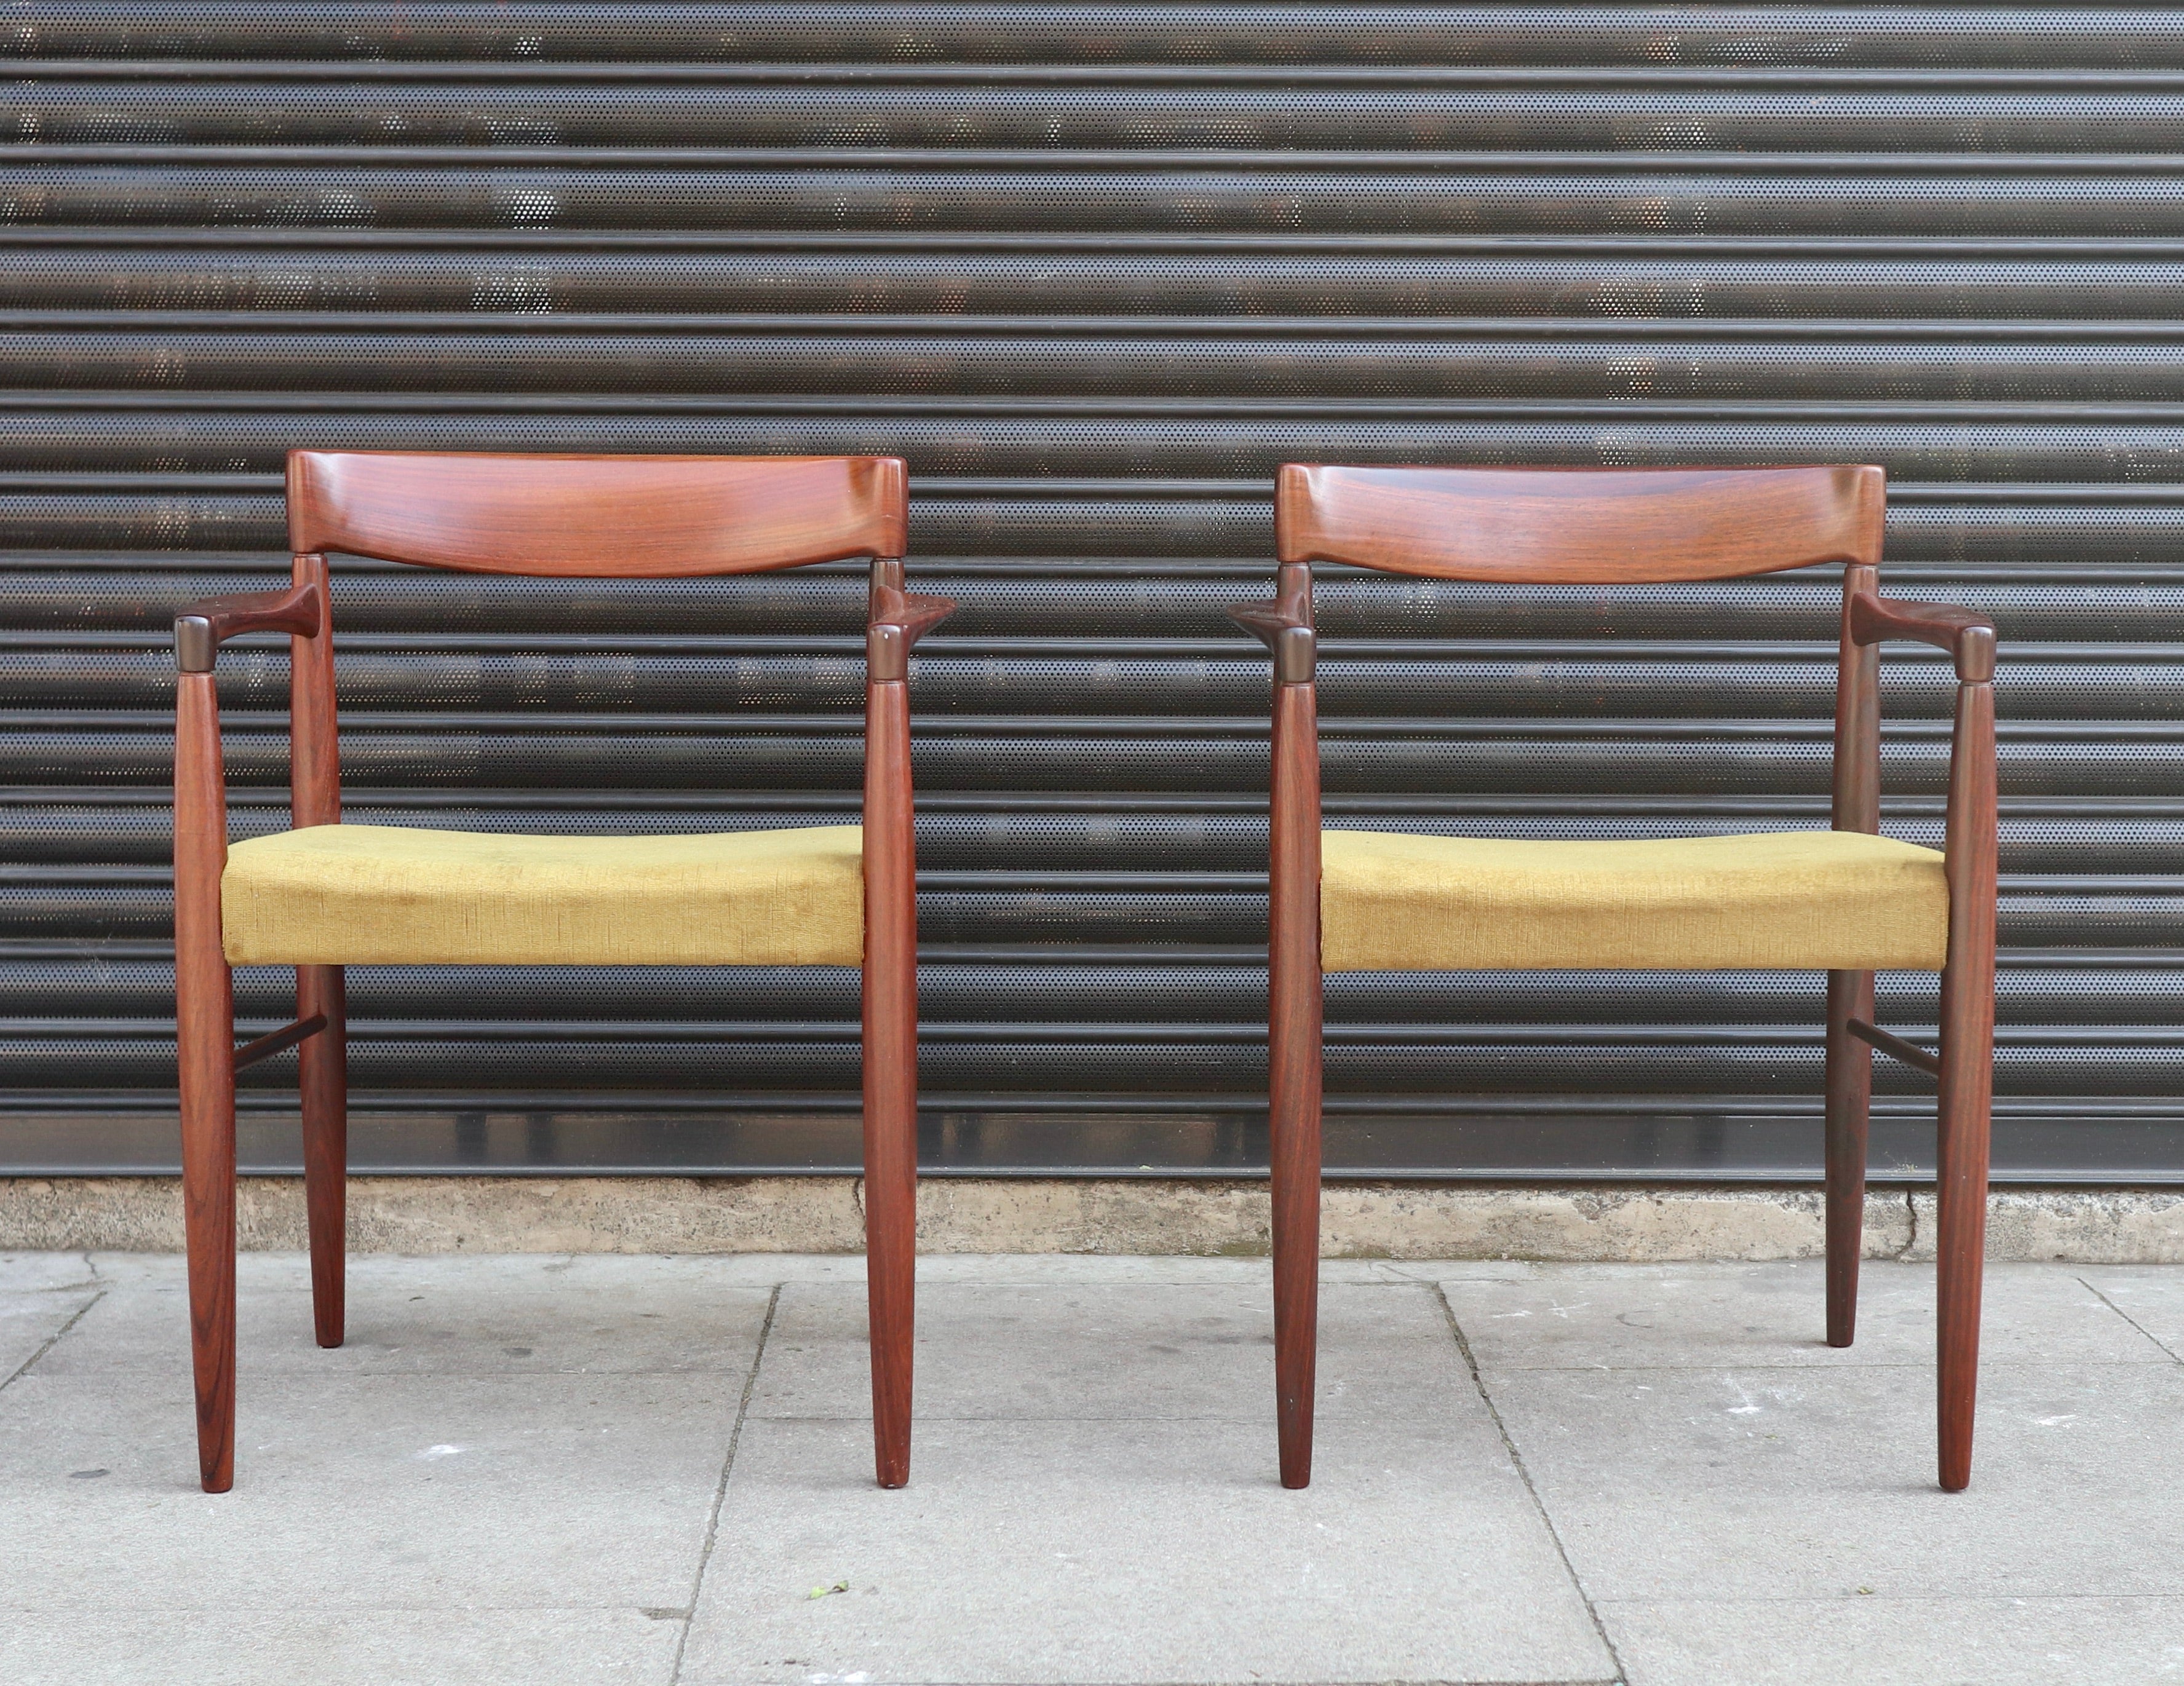 Une belle et élégante paire de chaises danoises en bois de rose massif des années 1960, tapissées de leur textile de velours jaune d'origine.  Ces chaises conçues par H. W. Klein ont été produites par Byne. Elles sont en très bon état et ont été